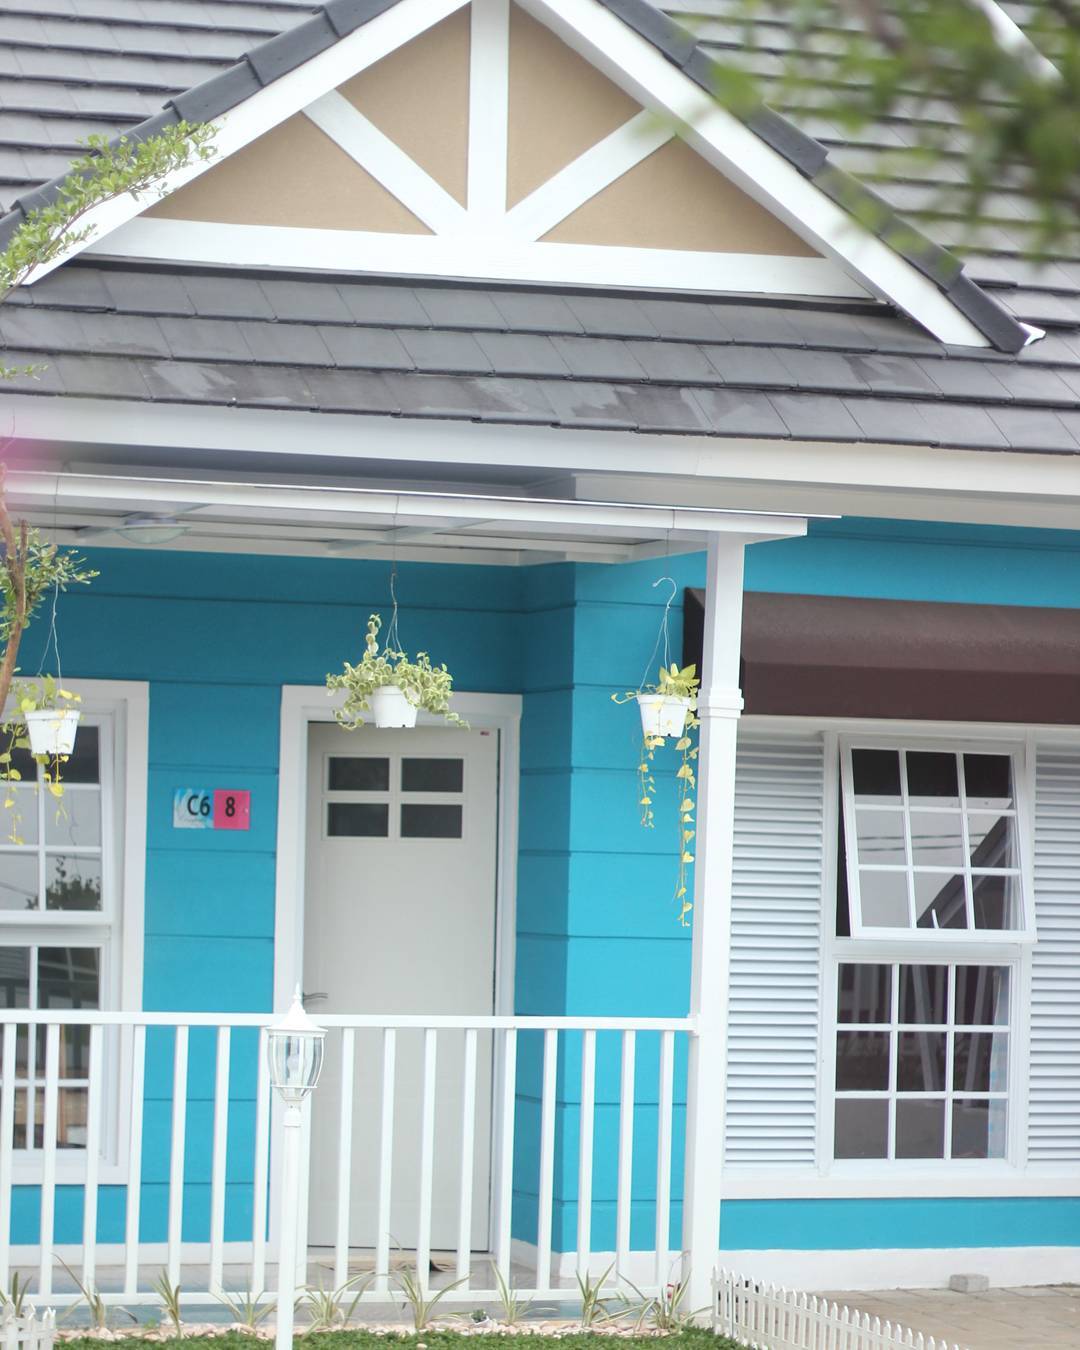 Kumpulan Foto Rumah Minimalis Bertema Biru Dan Putih Homeshabbycom Design Home Plans